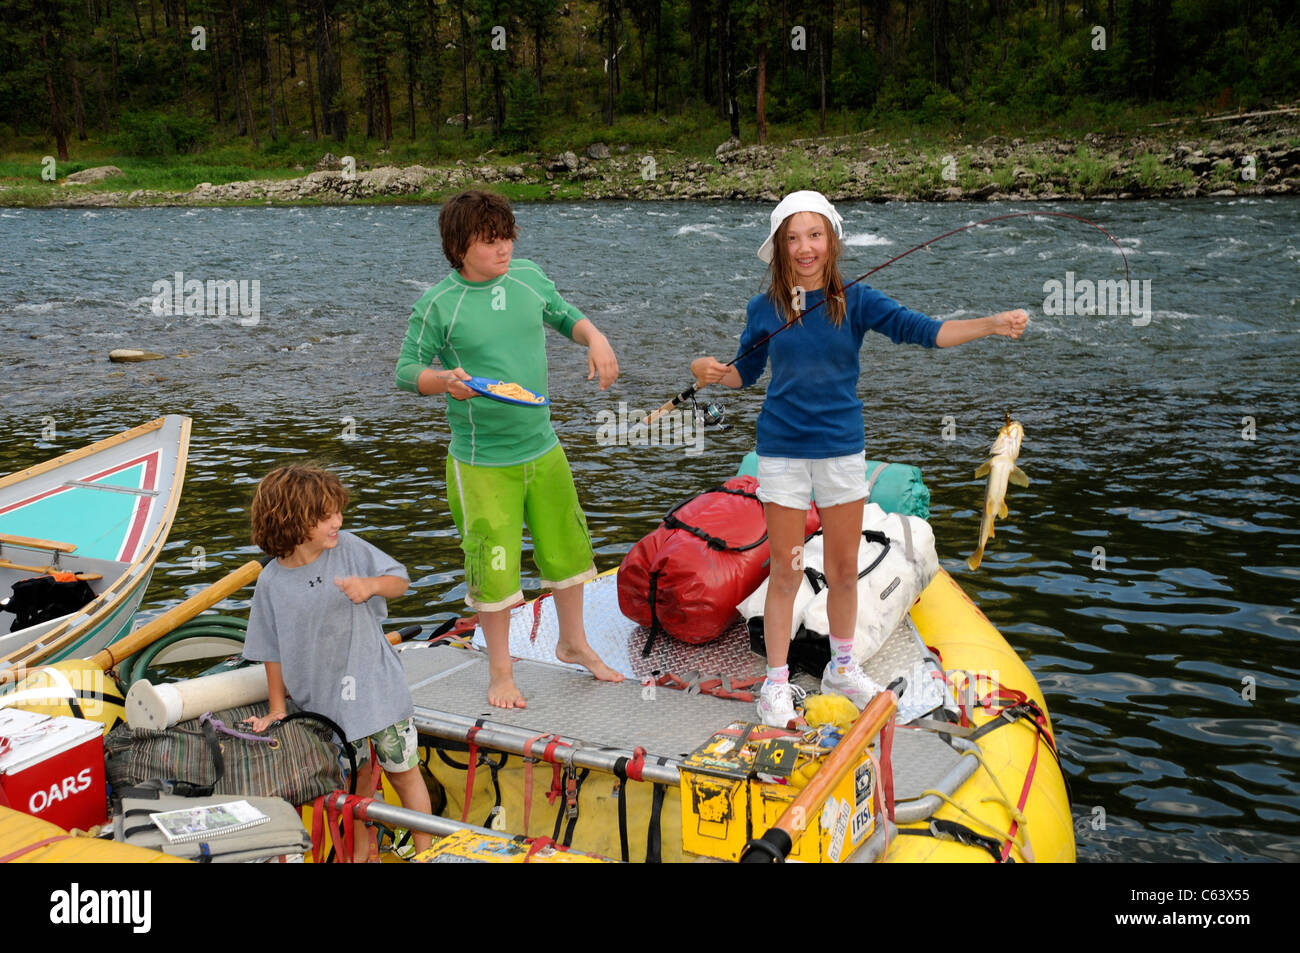 Les enfants attraper des poissons au cours de river rafting sur la principale rivière à saumons Idaho avec O.A.R.S. Banque D'Images